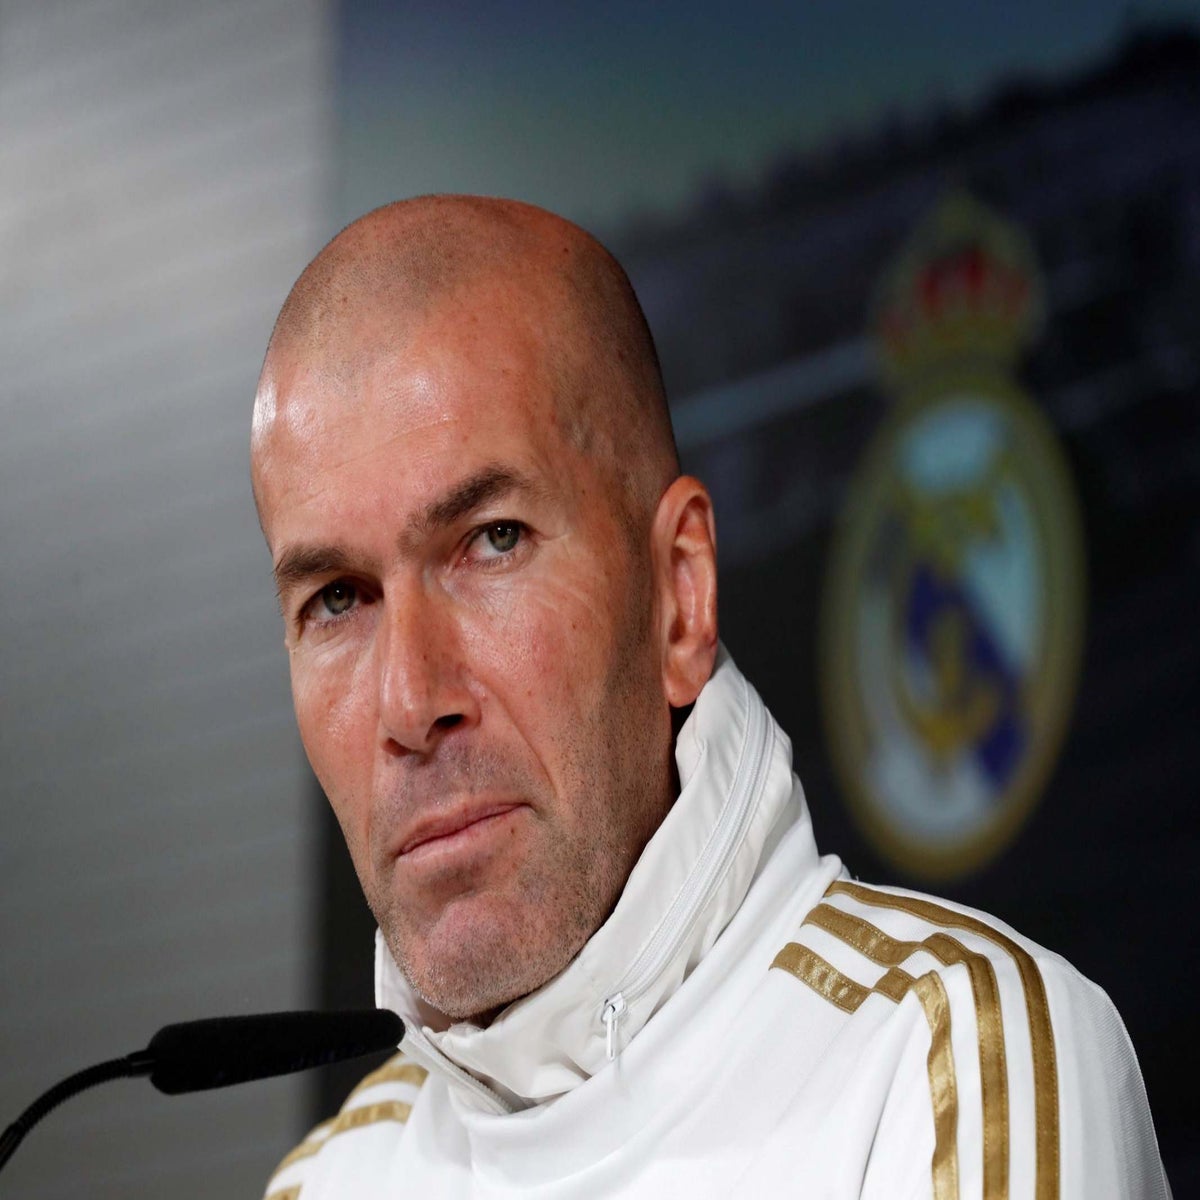 Zinedine Zidane - Wikipedia